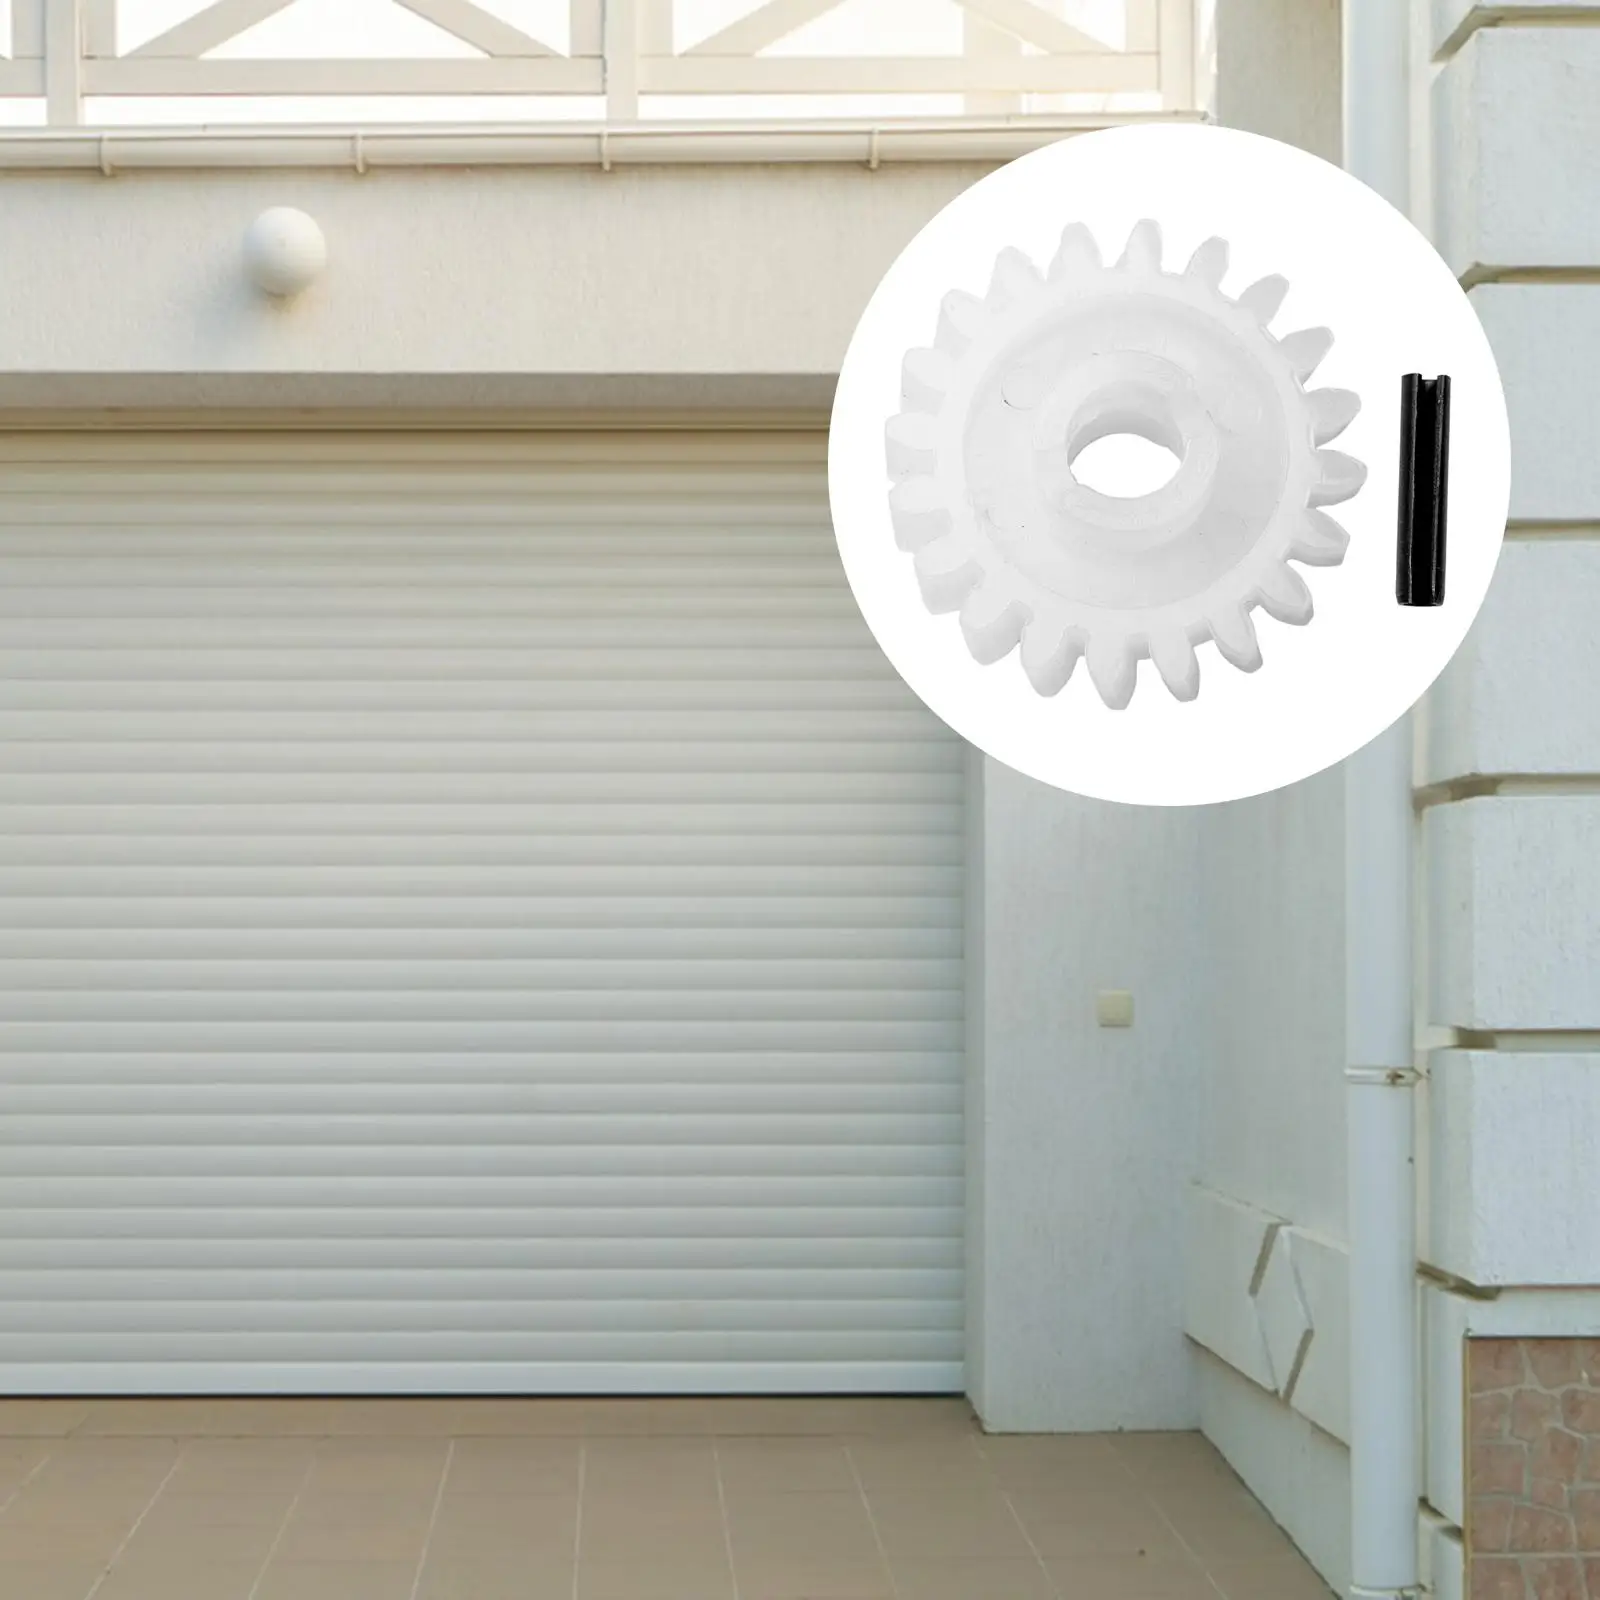 Garage Door Gear Upgrade Practical 2.17inch Lightweight Replaceable Garage Door Opener for XX133 XX333 XX350 DIY Accessory